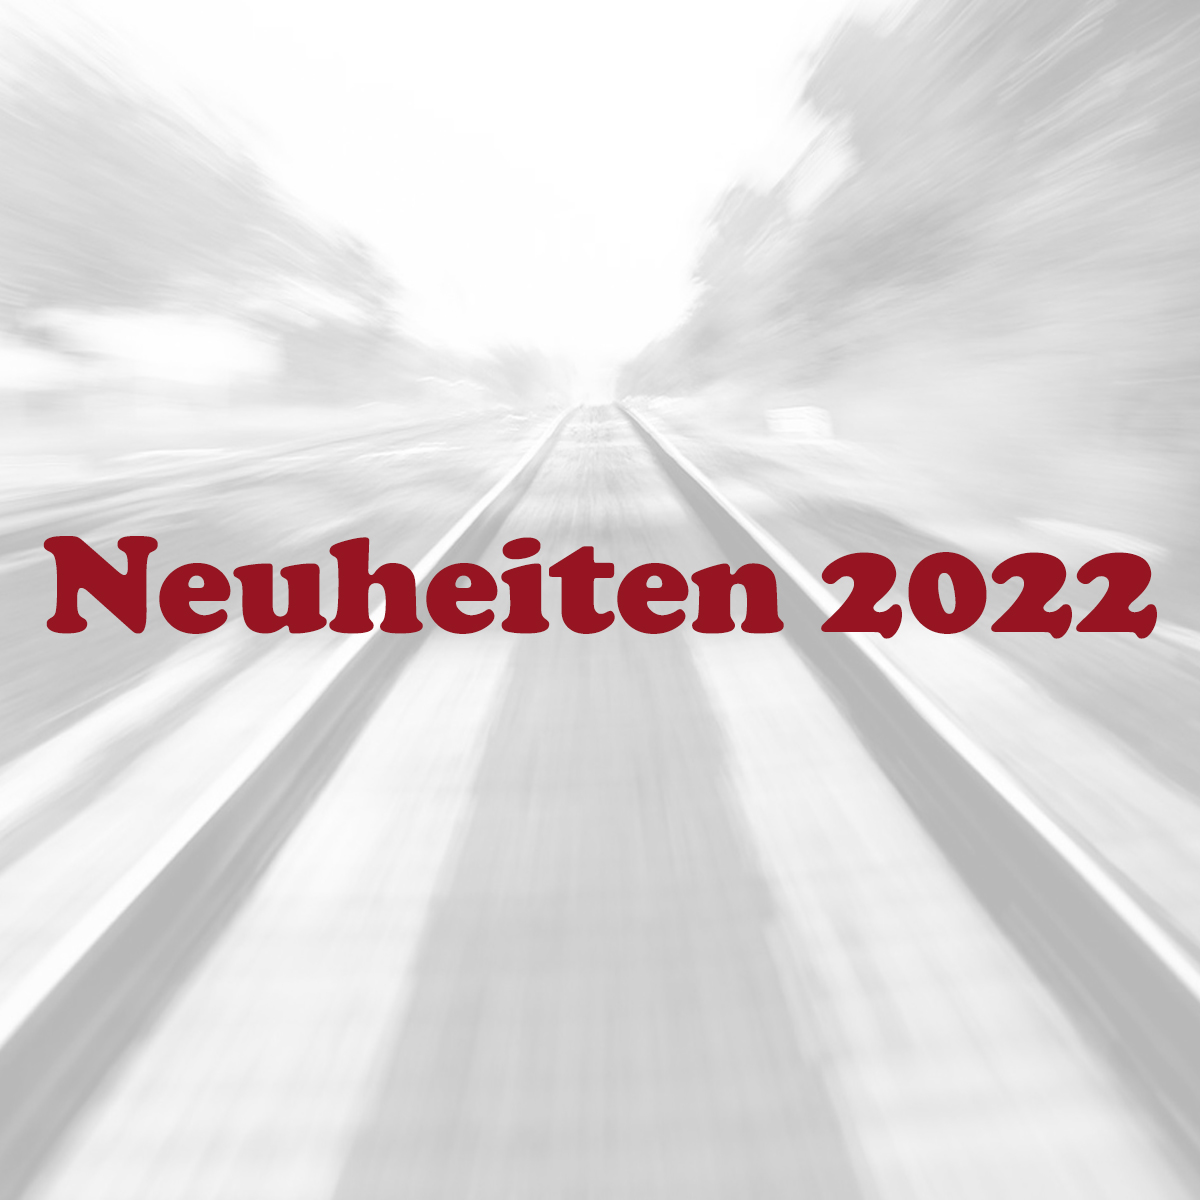 Neuheiten 2022